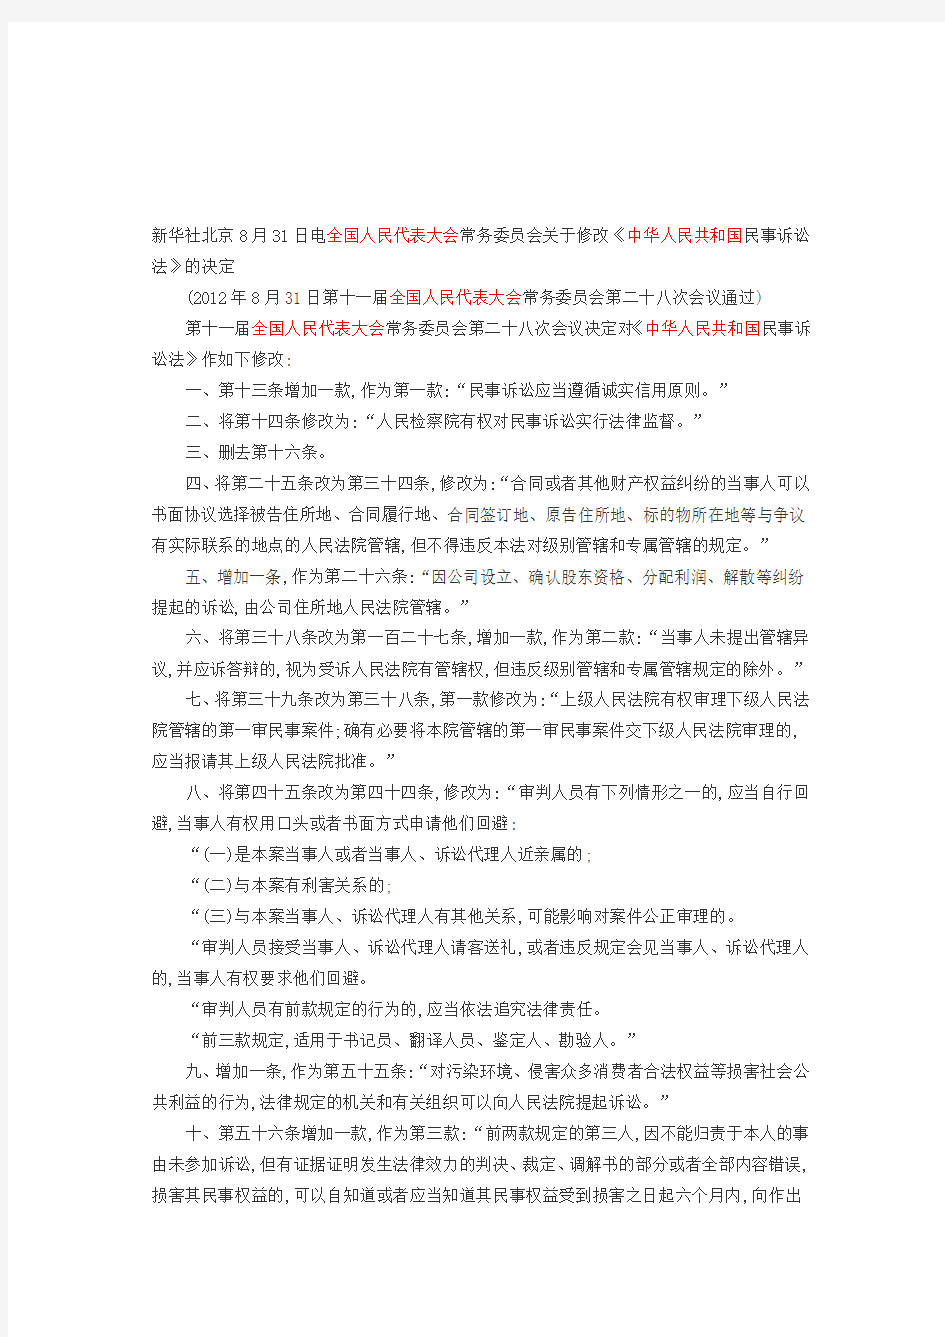 2012年《中华人民共和国民事诉讼法》修正案及全文